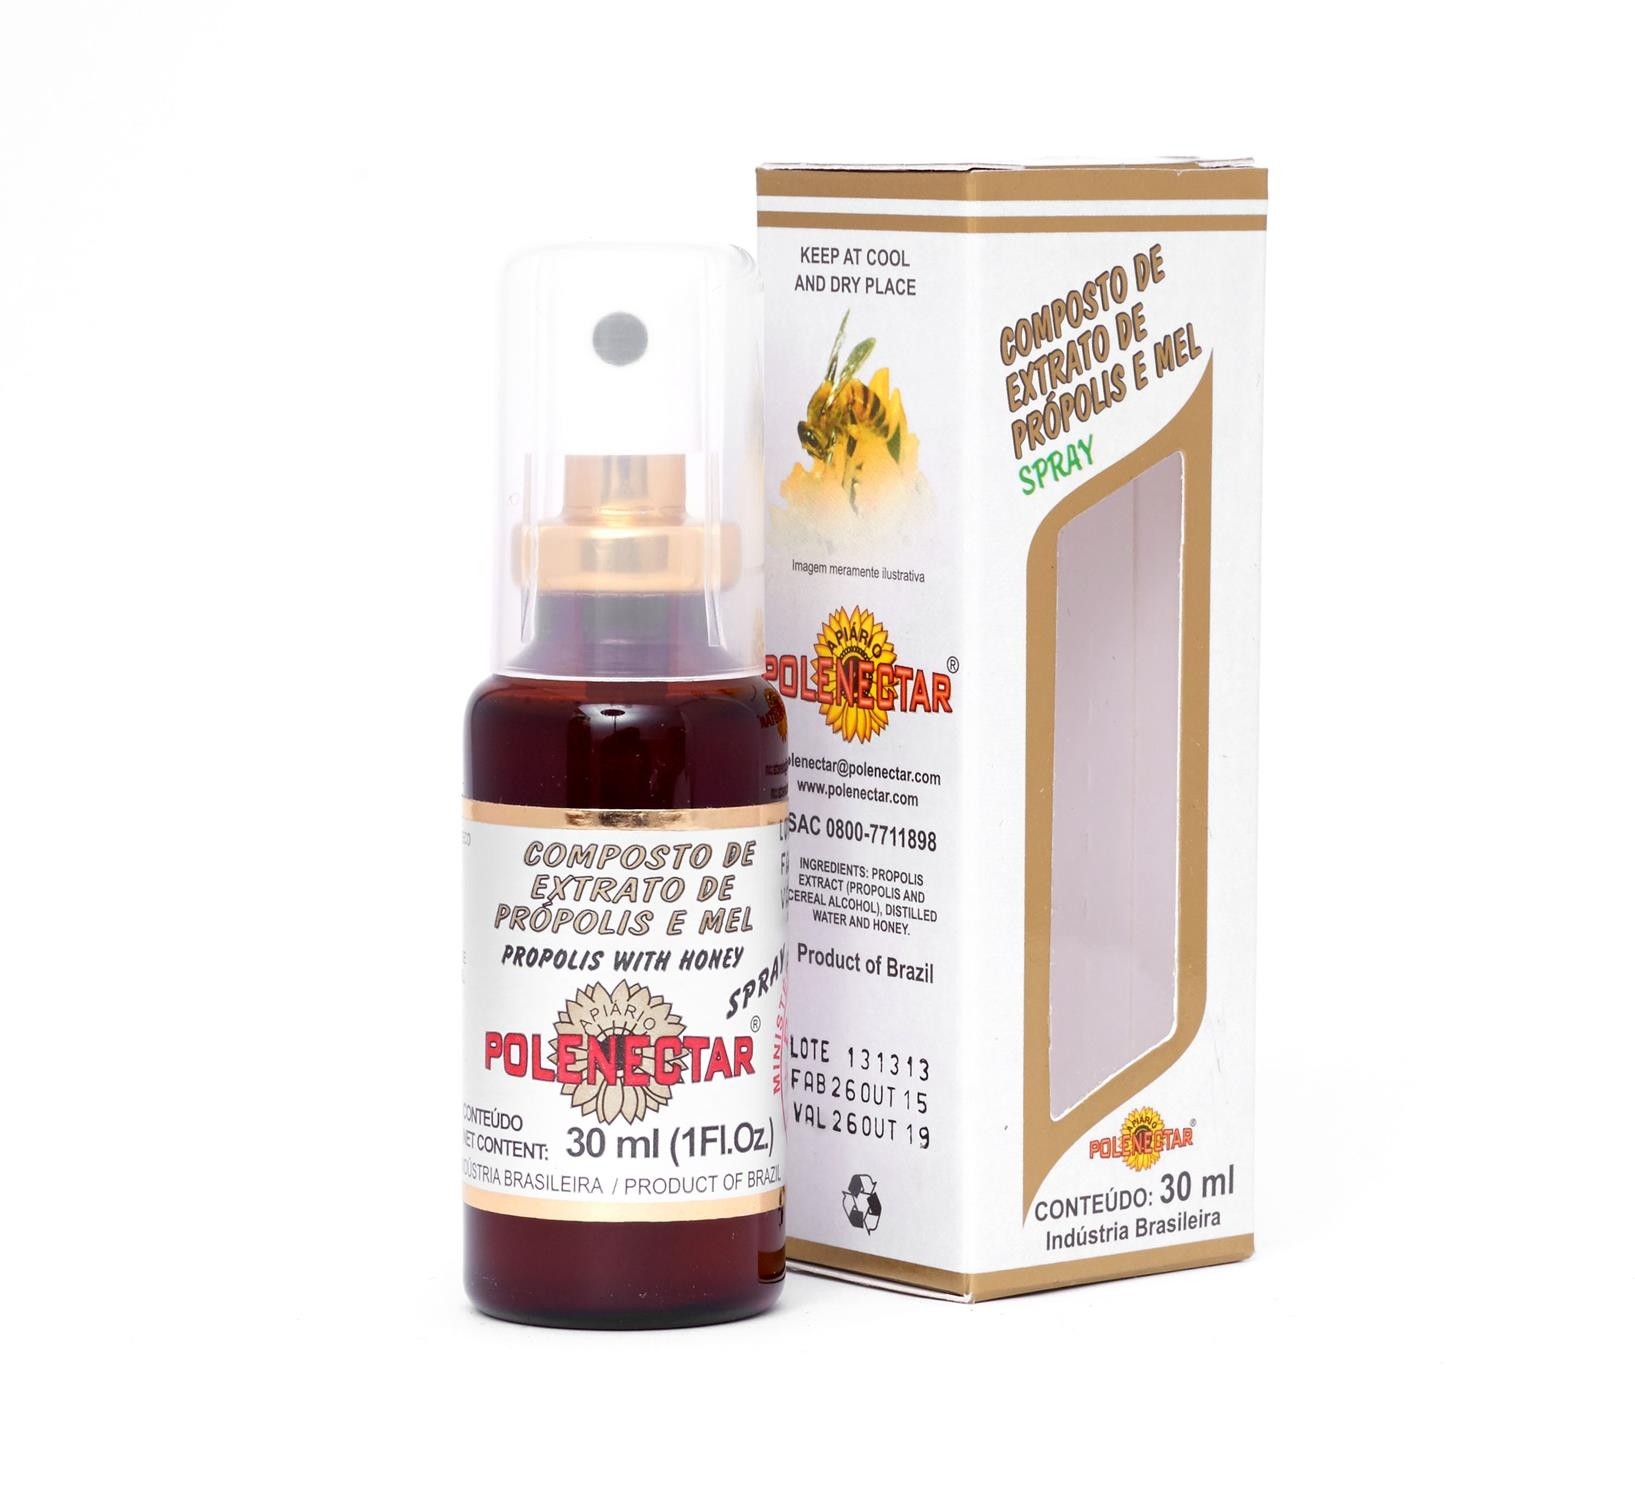 百益 - 蜂膠和蜂蜜噴劑 Polenectar Propolis Extract and Honey Spray